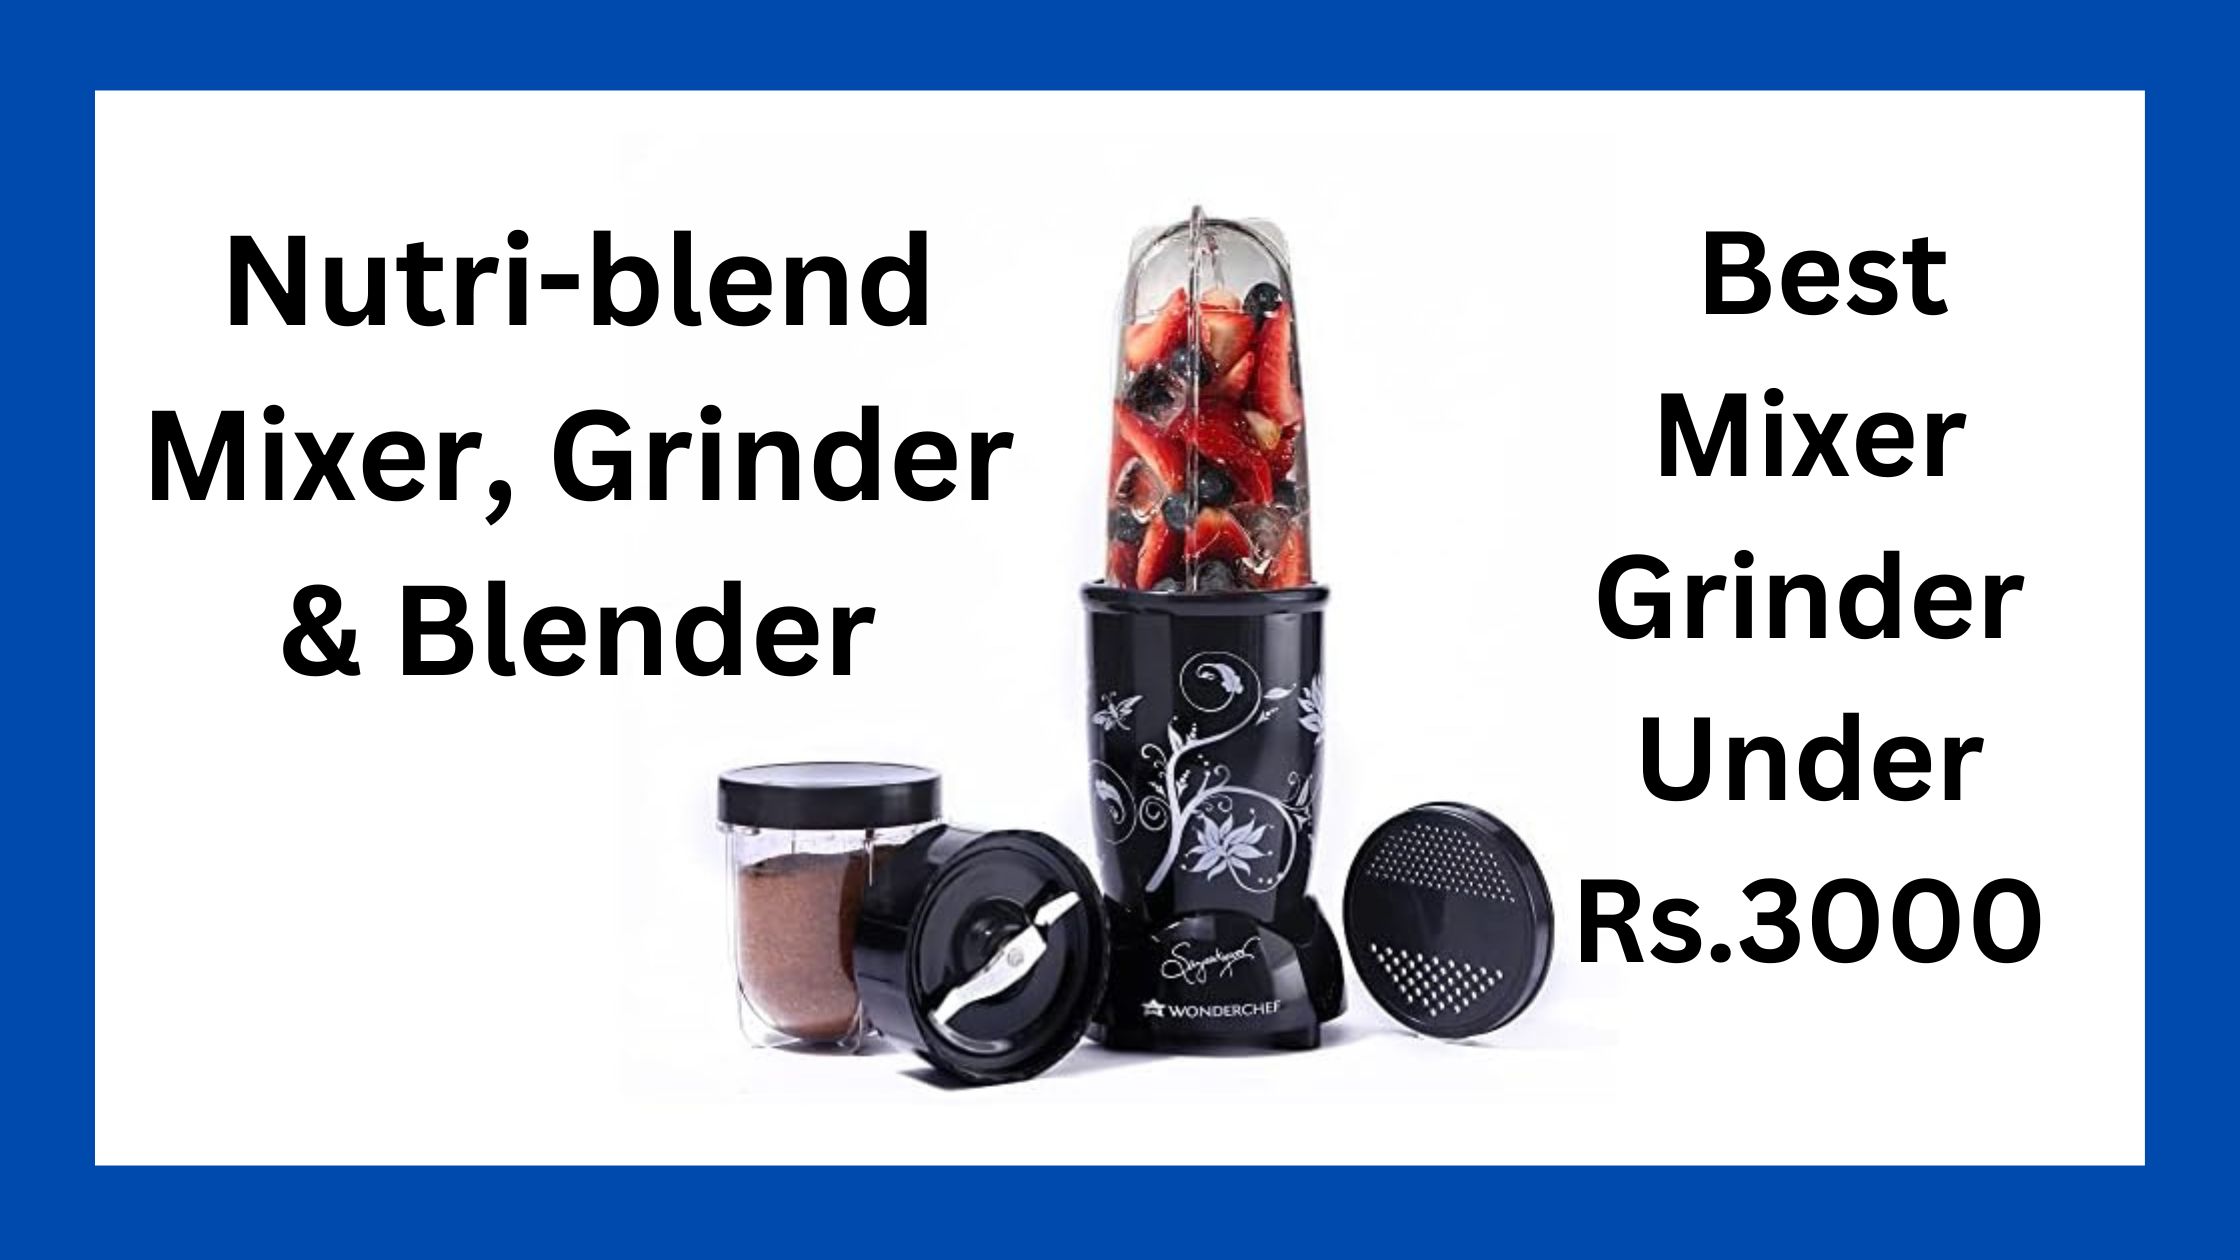 Nutri-blend Mixer, Grinder & Blender